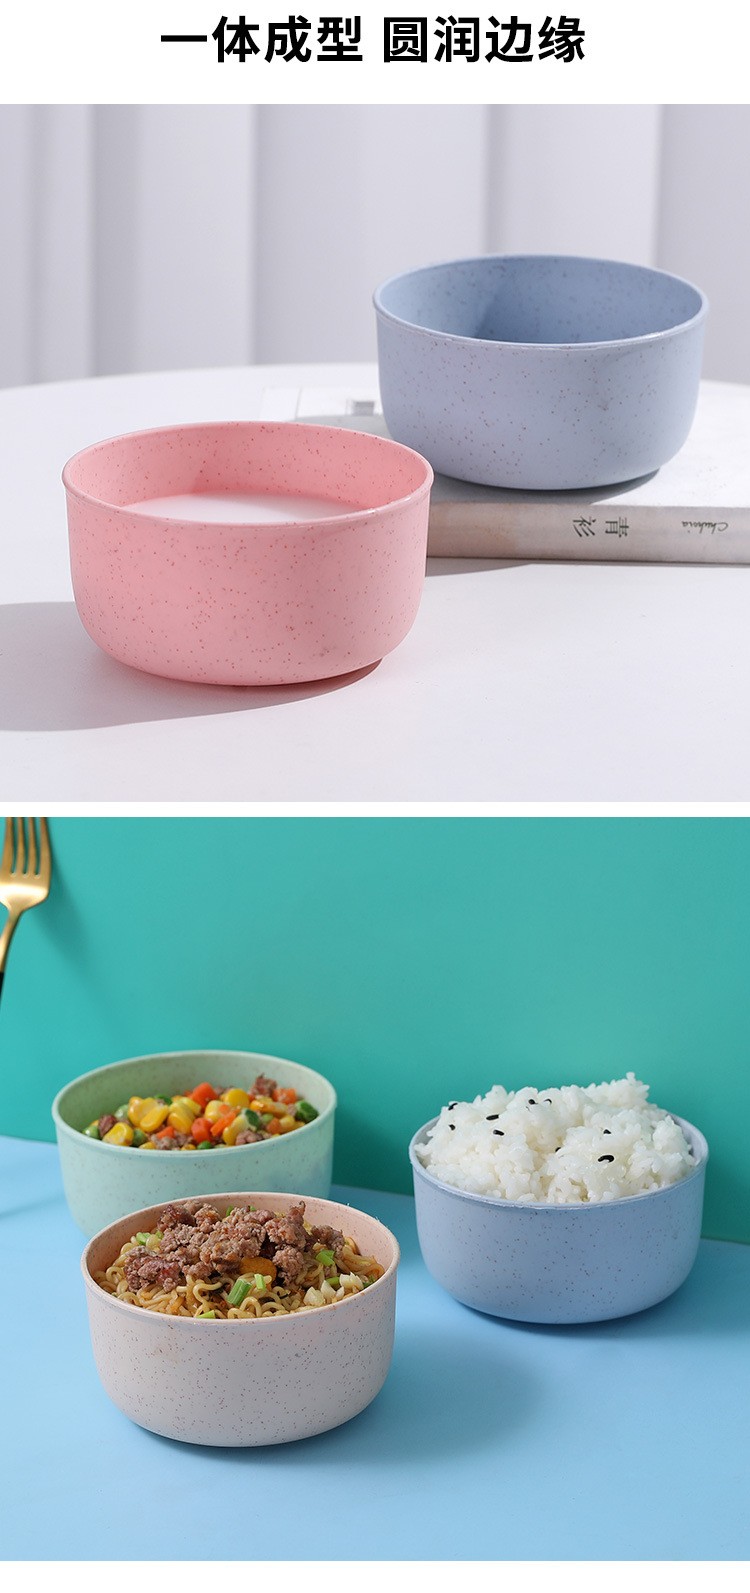 小麦秸秆碗塑料家用汤面米饭汤碗餐具儿童碗餐具日用品圆形塑料碗详情图10